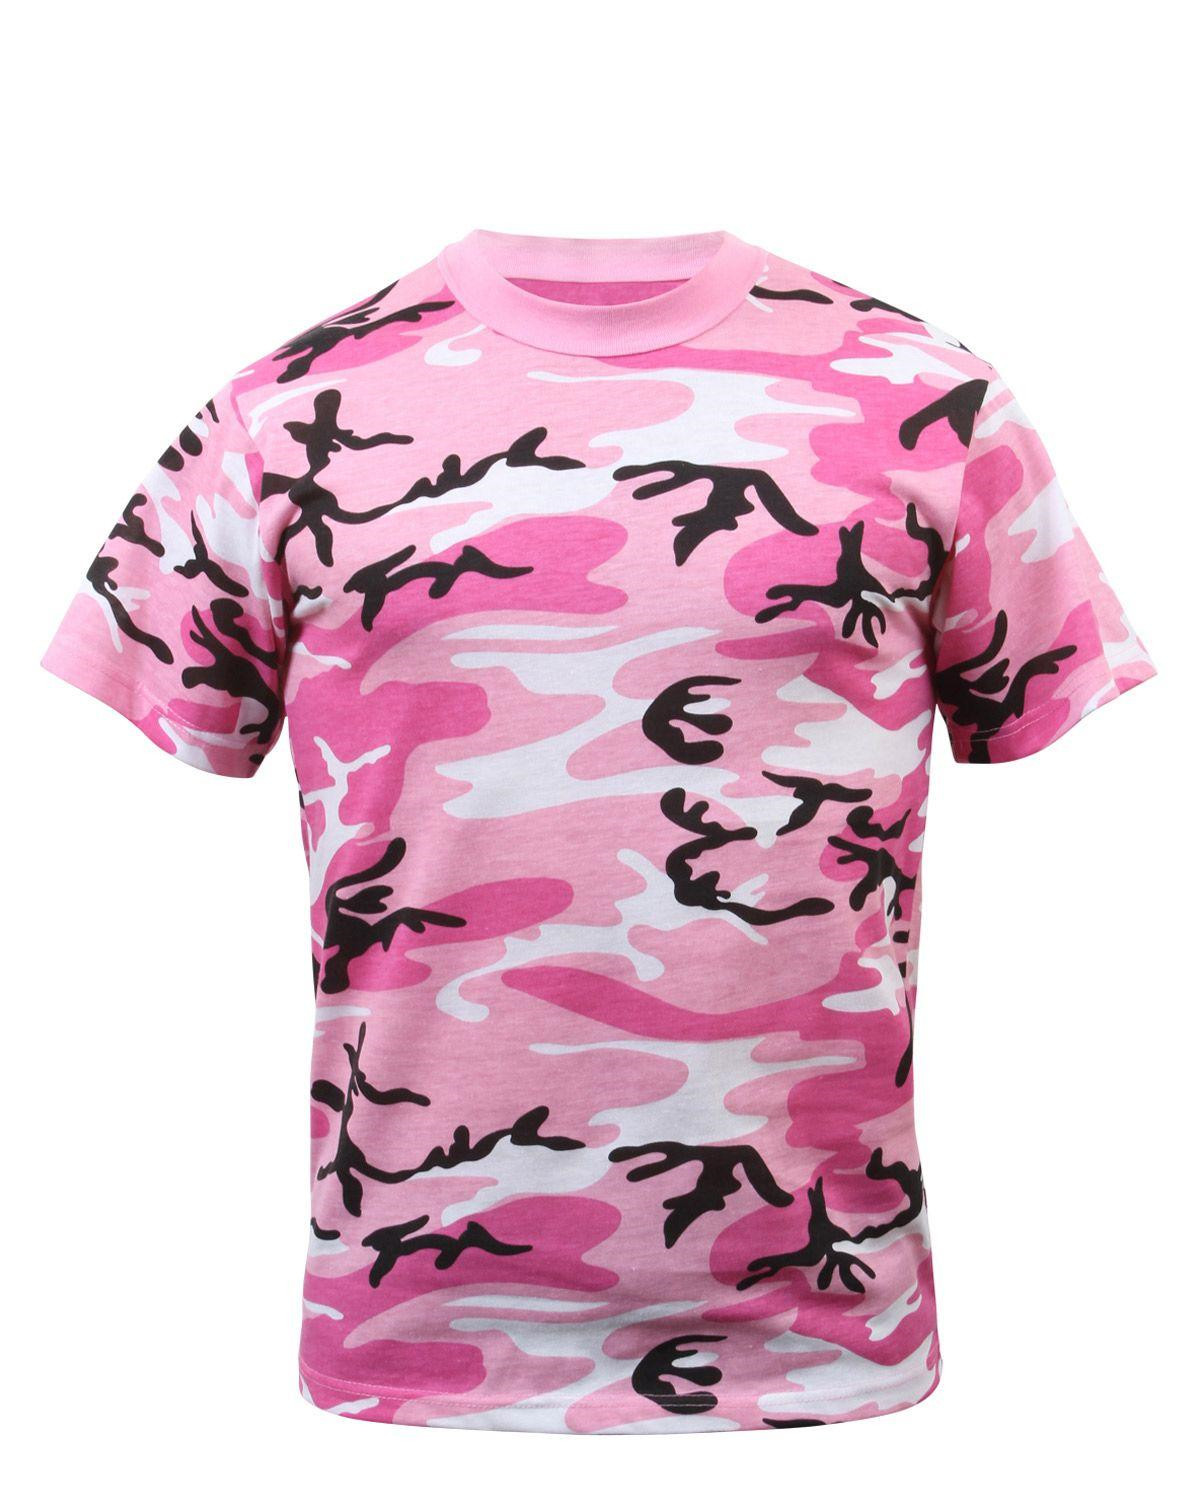 Rothco T-shirt (Pink Camo, XL)